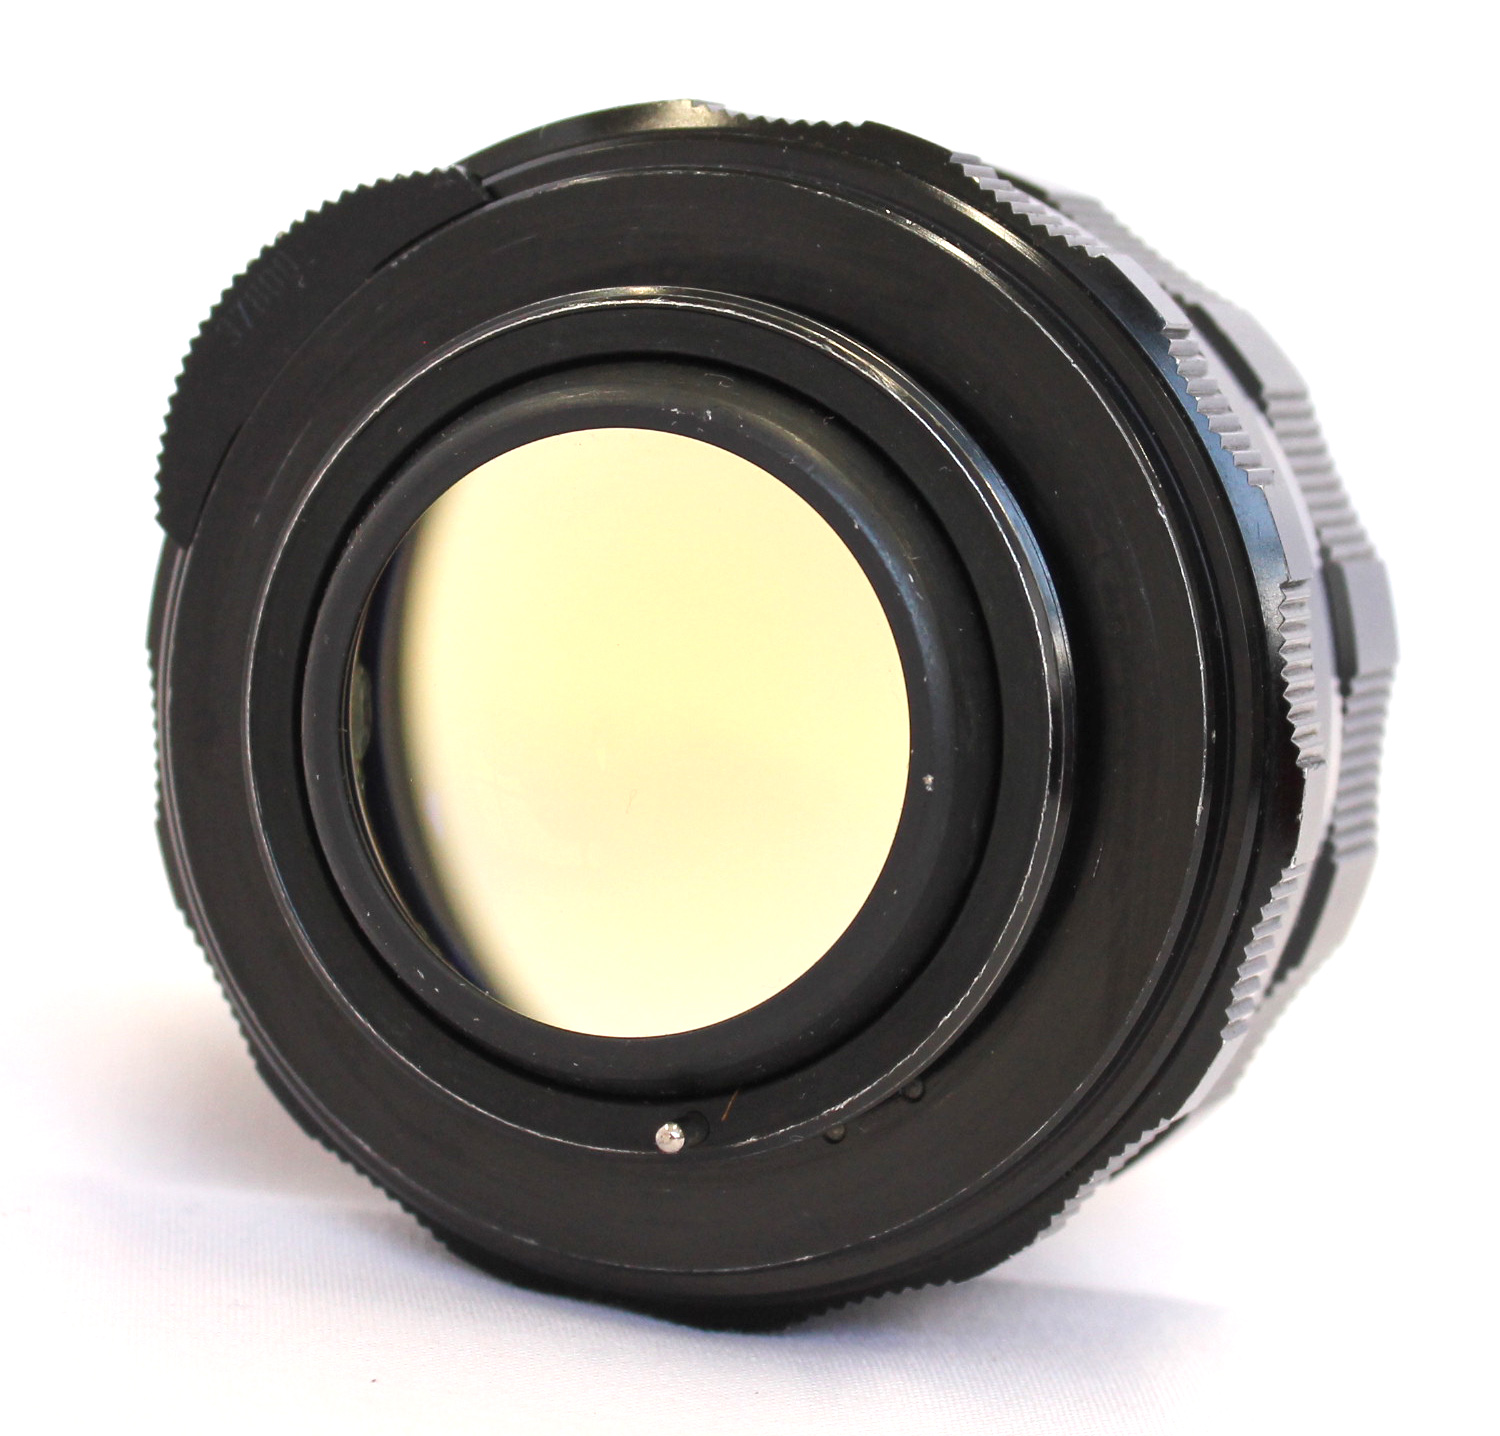 Asahi Pentax Spotmatic F SPF Black SLR Camera w/ Super Takumar